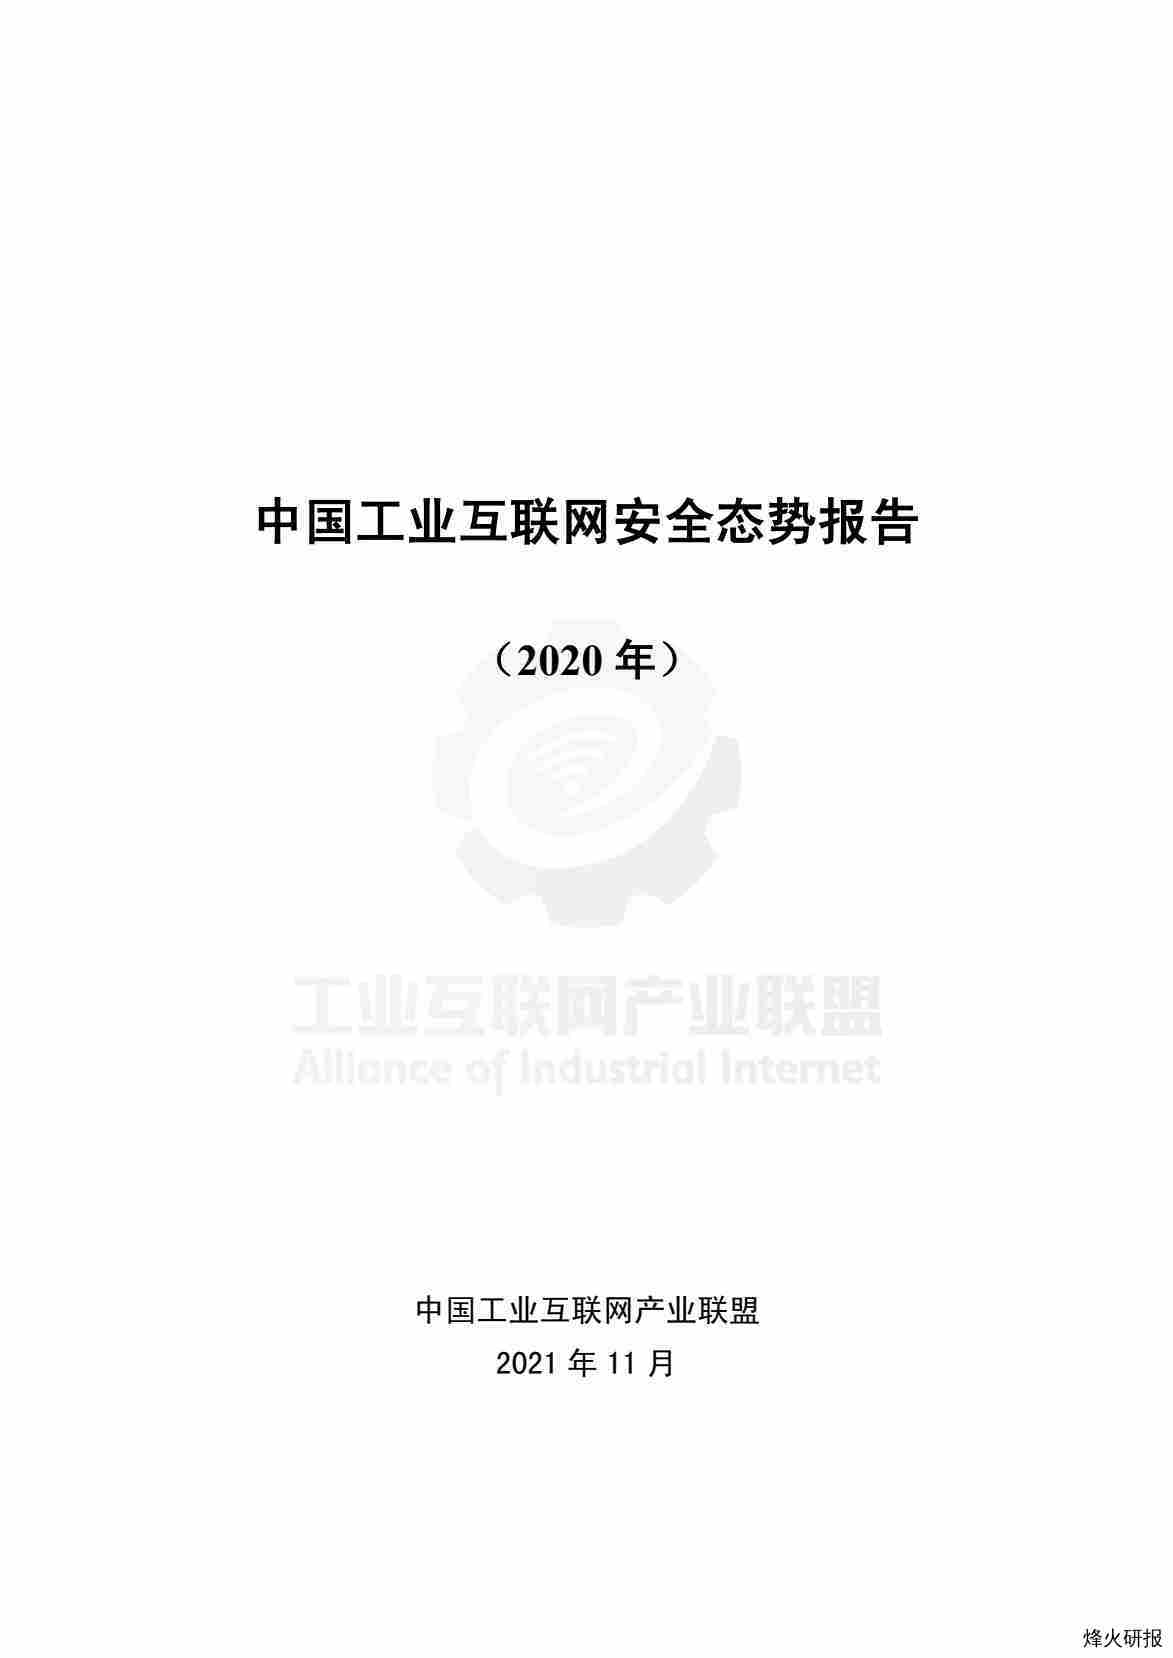 【工业互联网茶产业联盟】中国工业互联网安全态势报告（2020年）.pdf-第一页